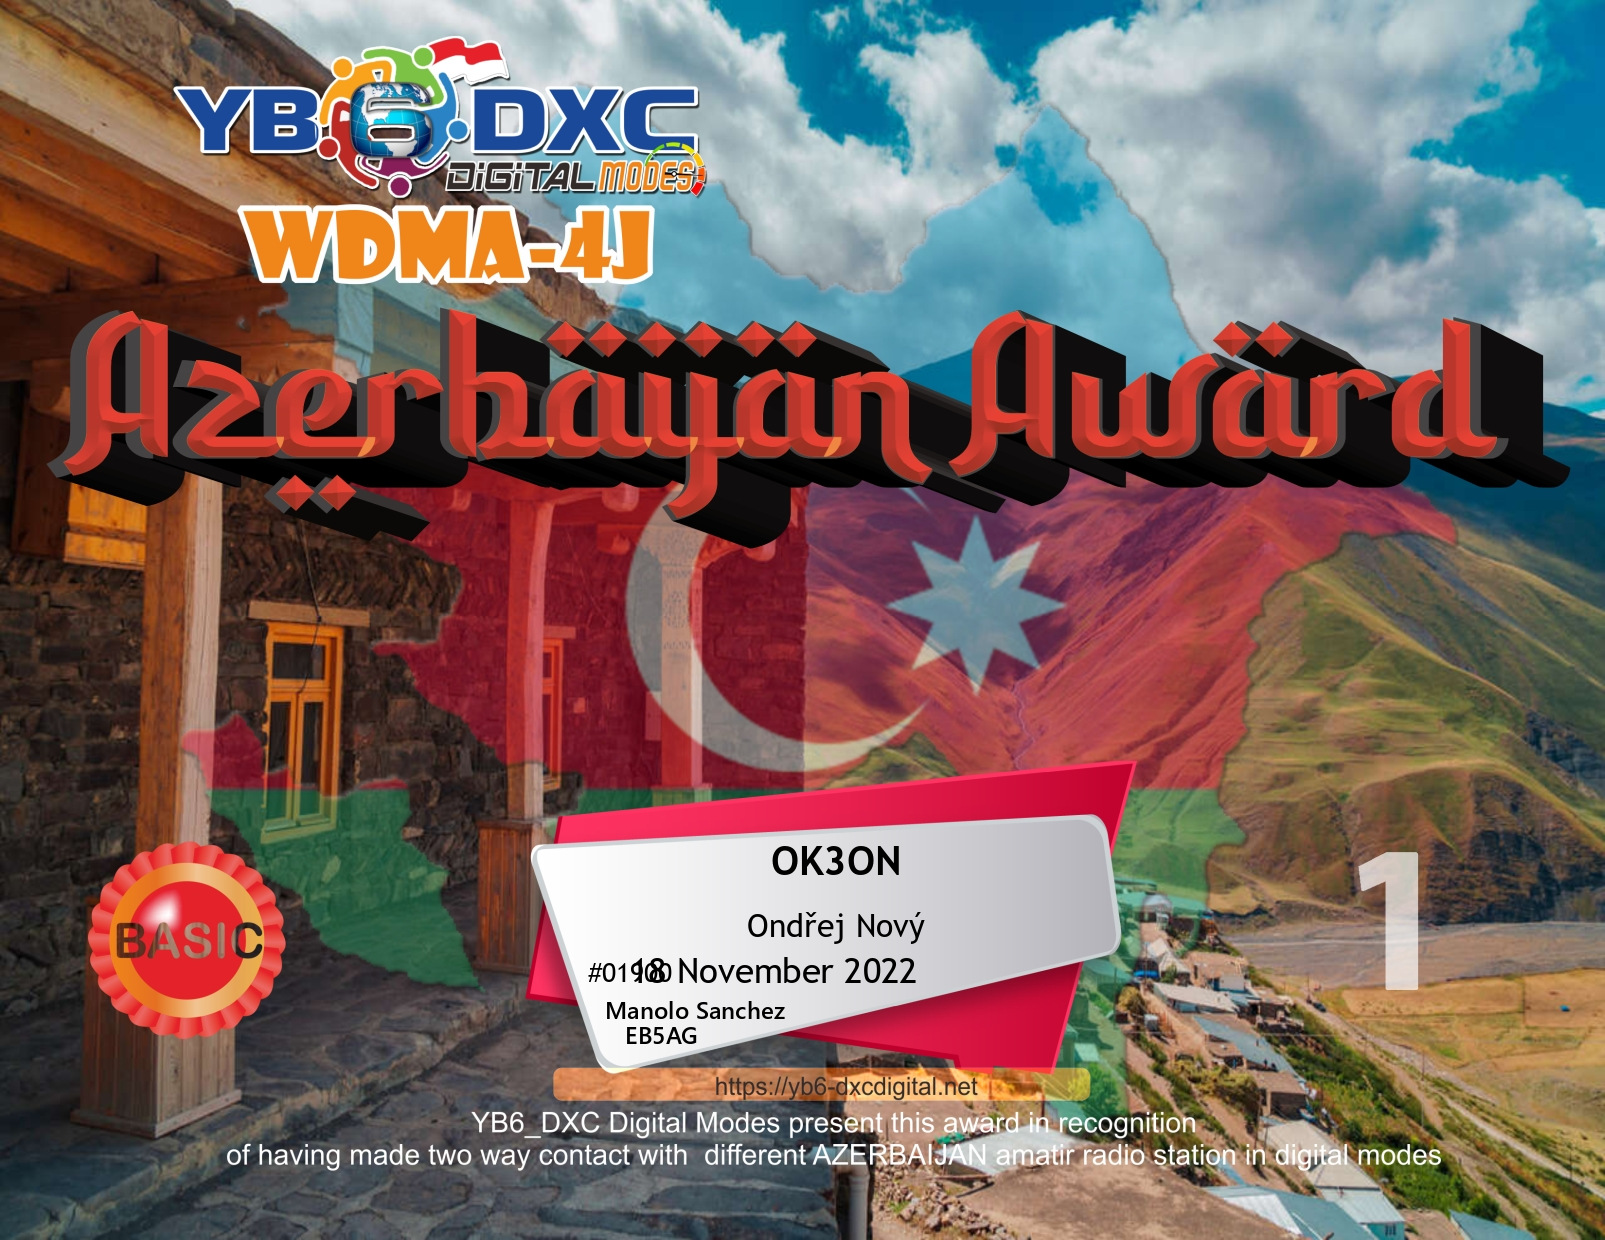 awards/OK3ON-WDM4J-BASIC_YB6DXC.jpg